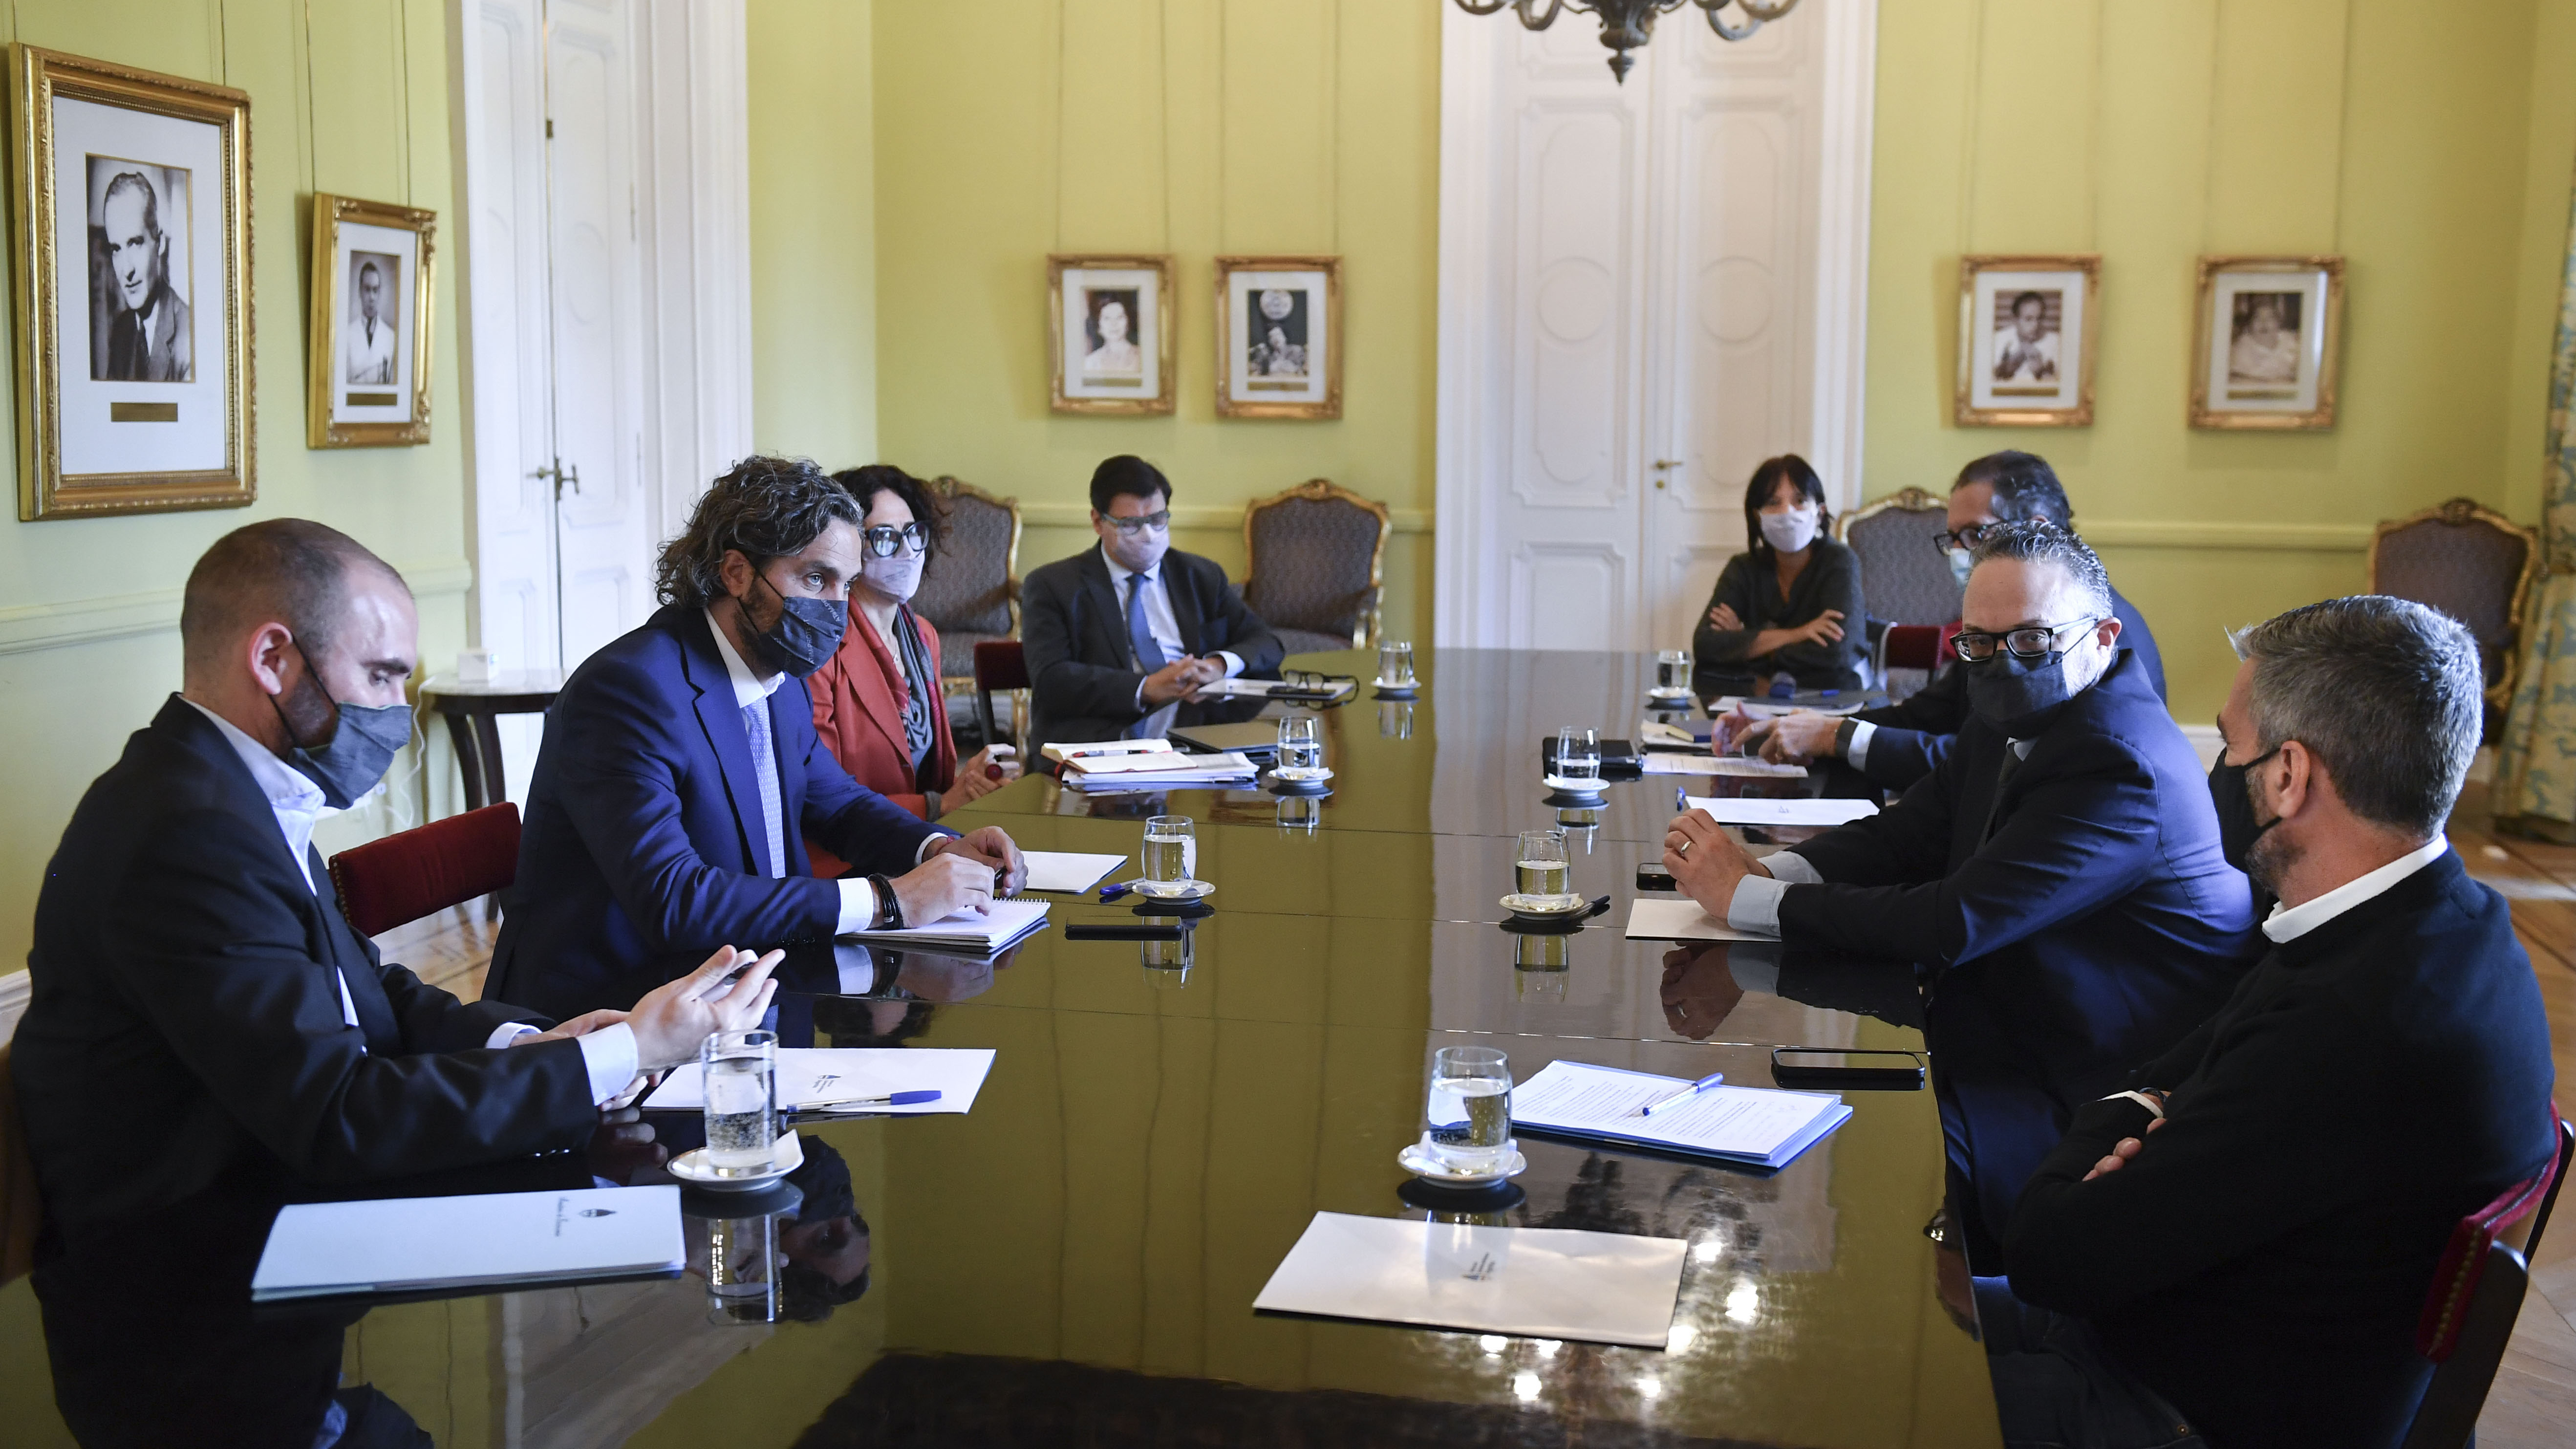 El jefe de Gabinete, Santiago Cafiero, repasó con ministros las claves económicas en la previa electoral. (Foto: Jefatura de Gabinete/Pablo Duberti)